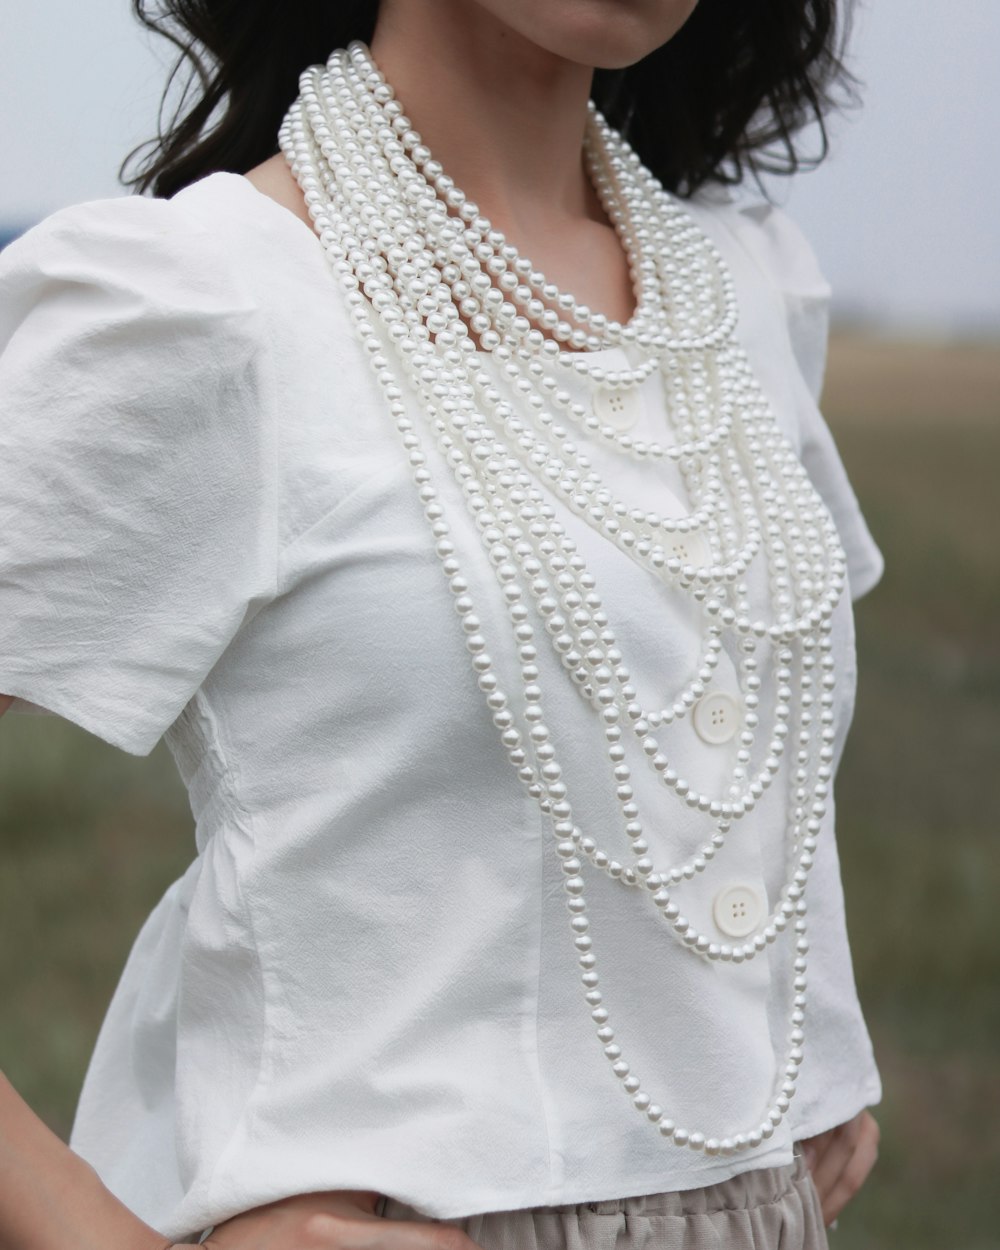 흰 블라우스와 흰 진주 목걸이를 입고 있는 여자